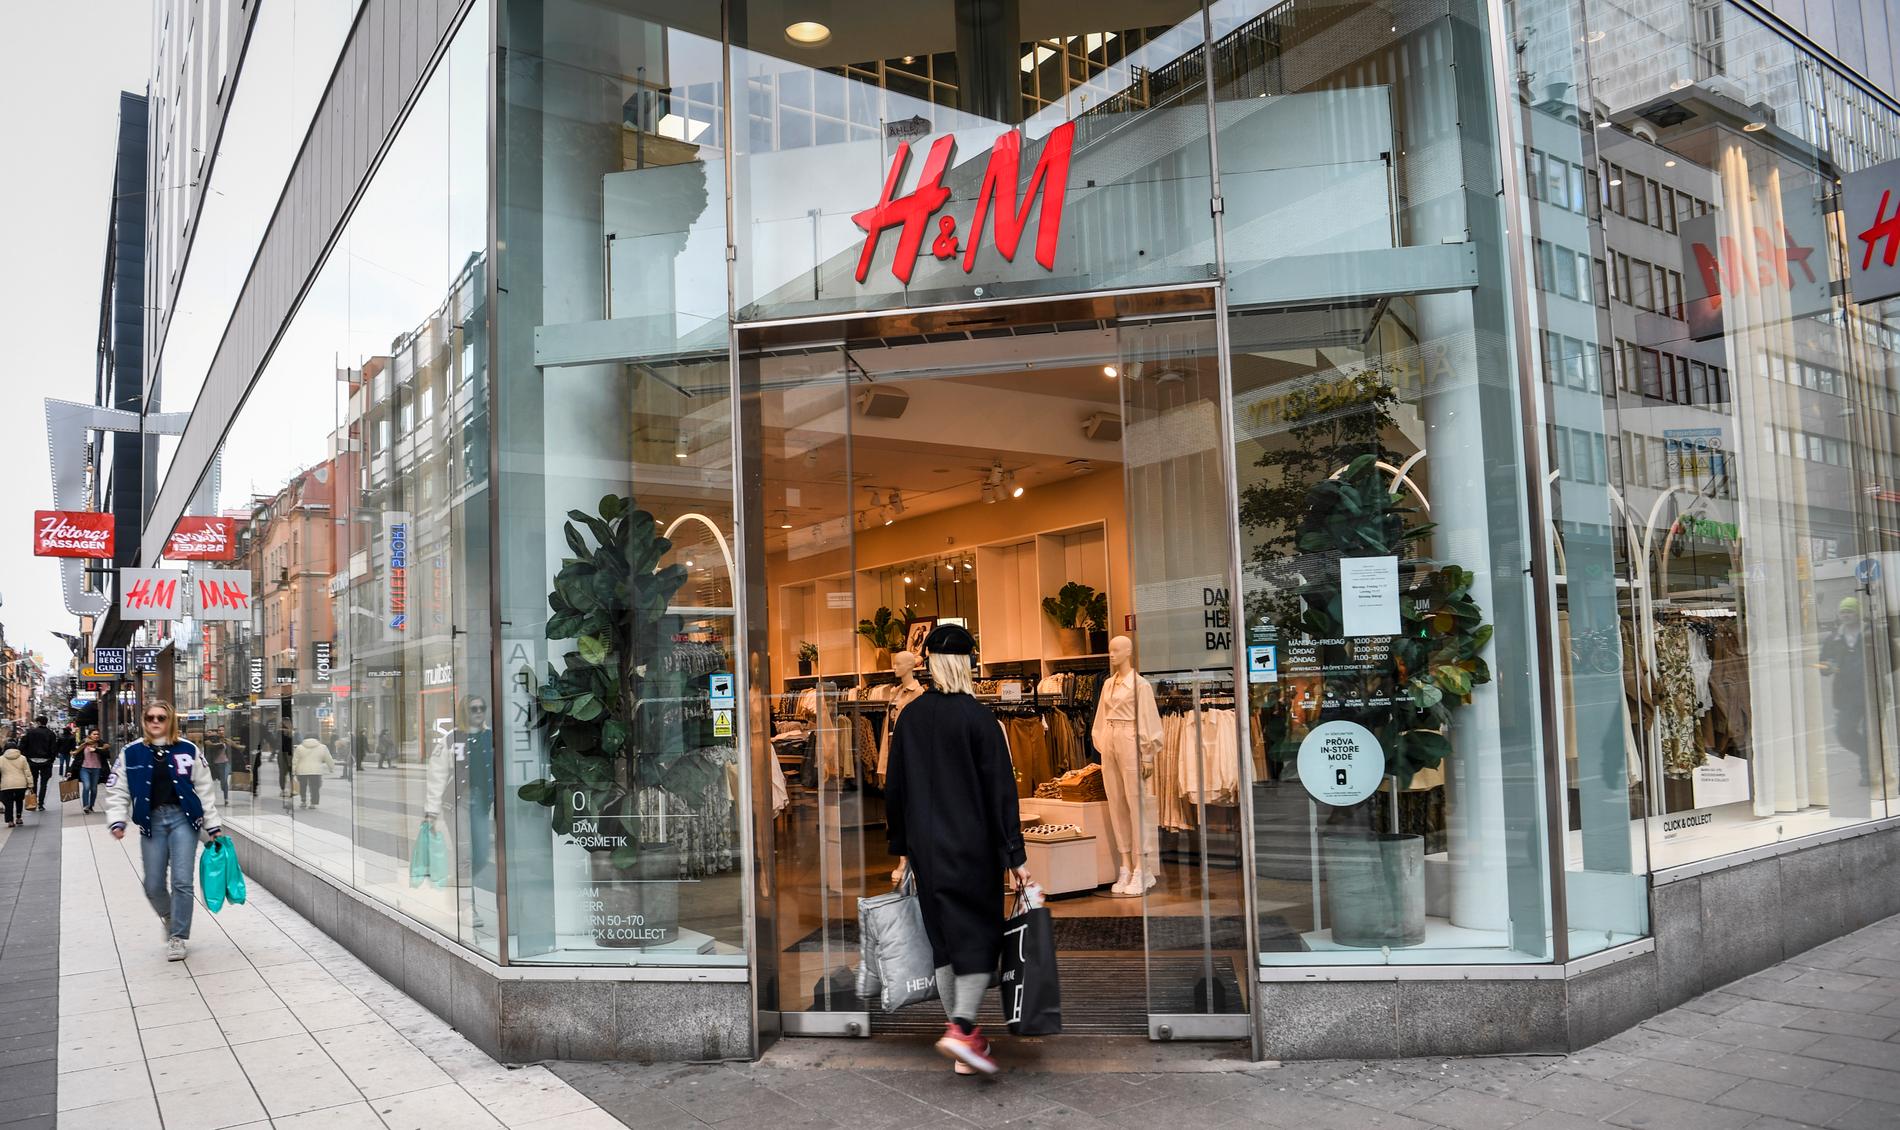 Var tredje H&M-butik Aftonbladets 200 sekunder besöker nekar en svart kvinna att byta sina kläder, trots att prislapparna är kvar på plaggen.